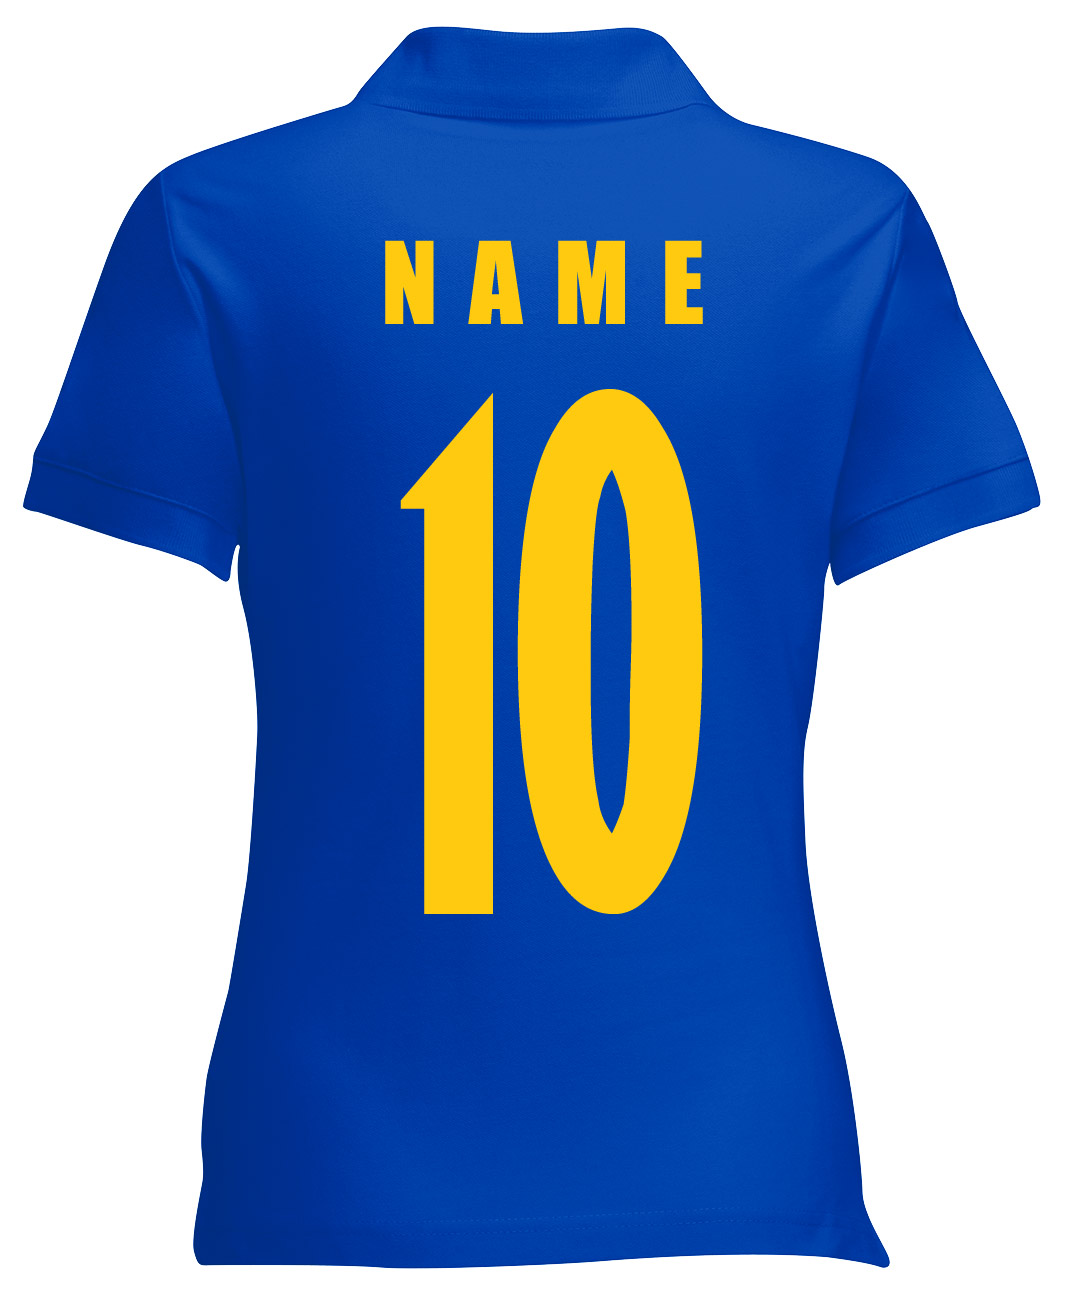 Schweden Sverige Damen Trikot Fanshirt Top Shirt WM 2018 Name Nummer 